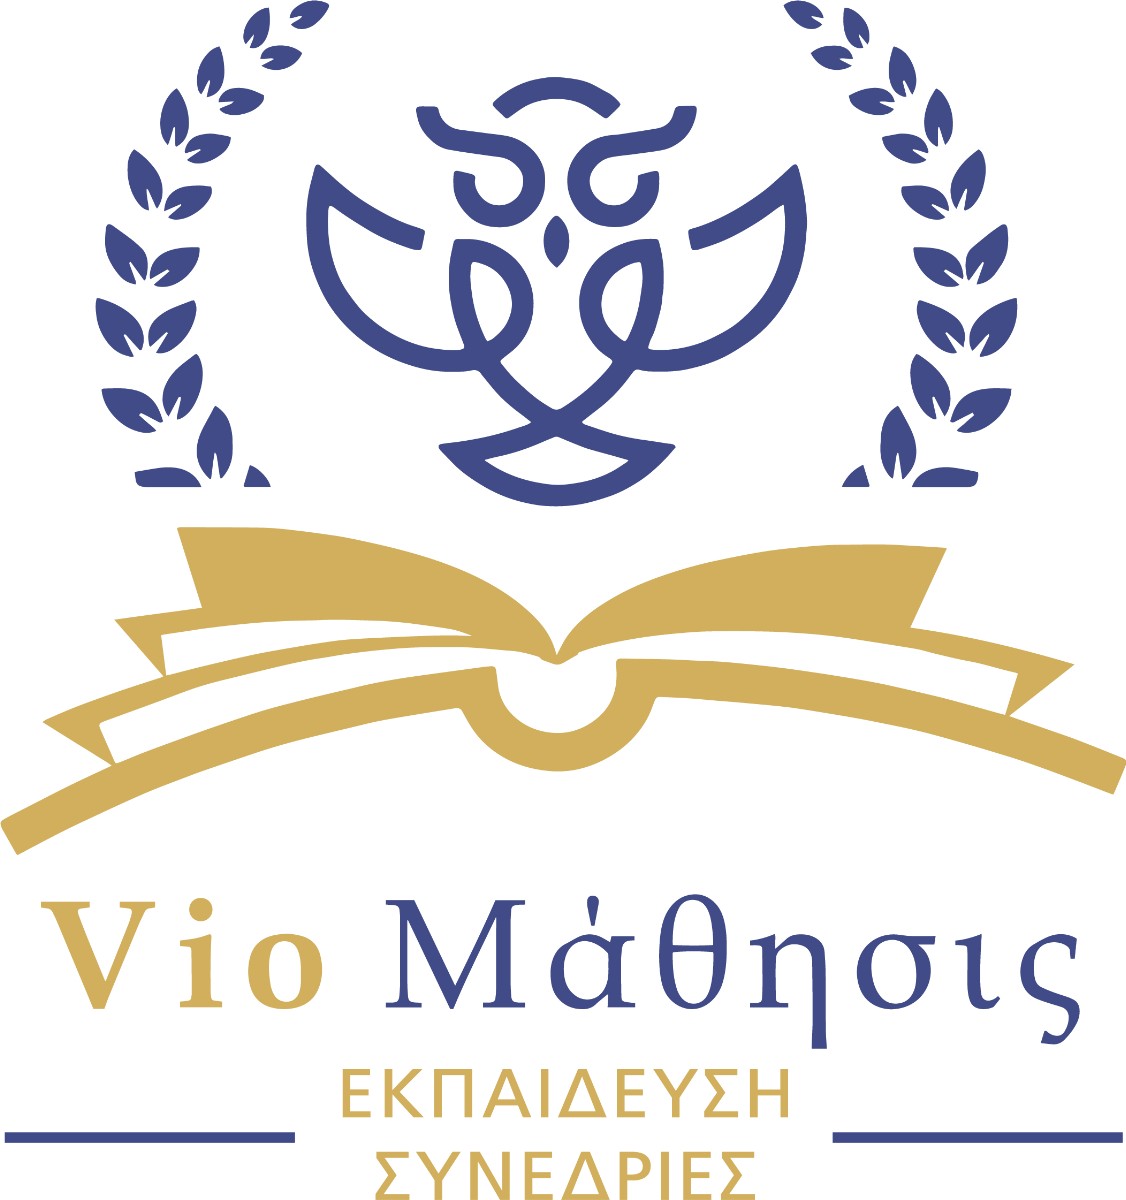 VIOMATHISIS logo